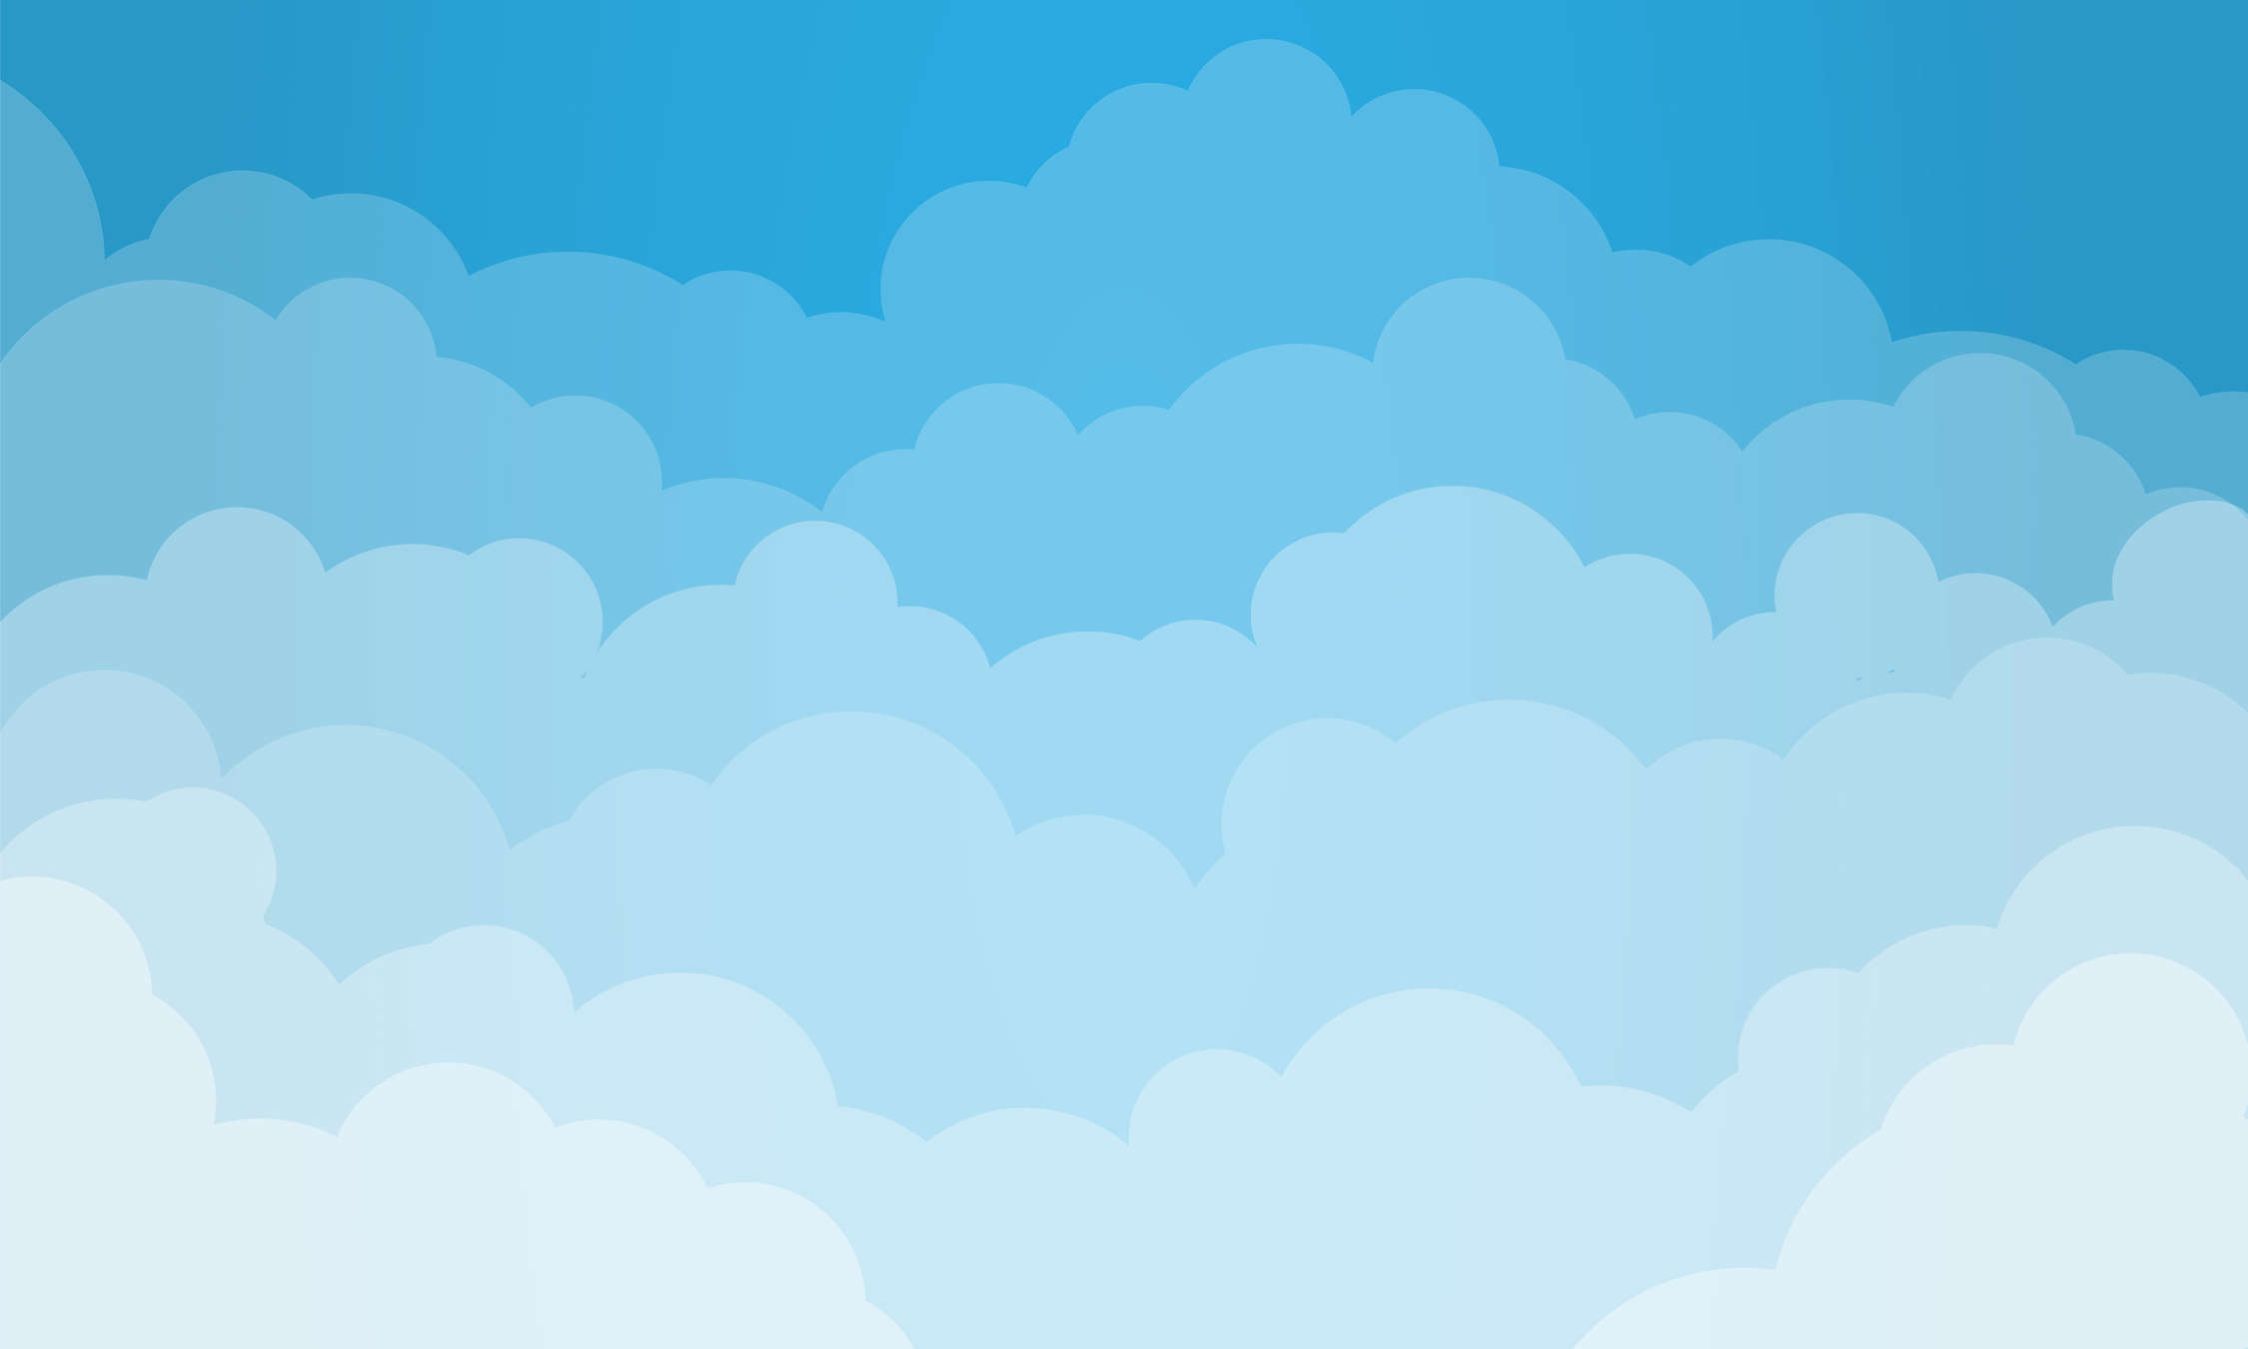             Papel pintable Cielo con Nubes - Liso y Nacarado
        